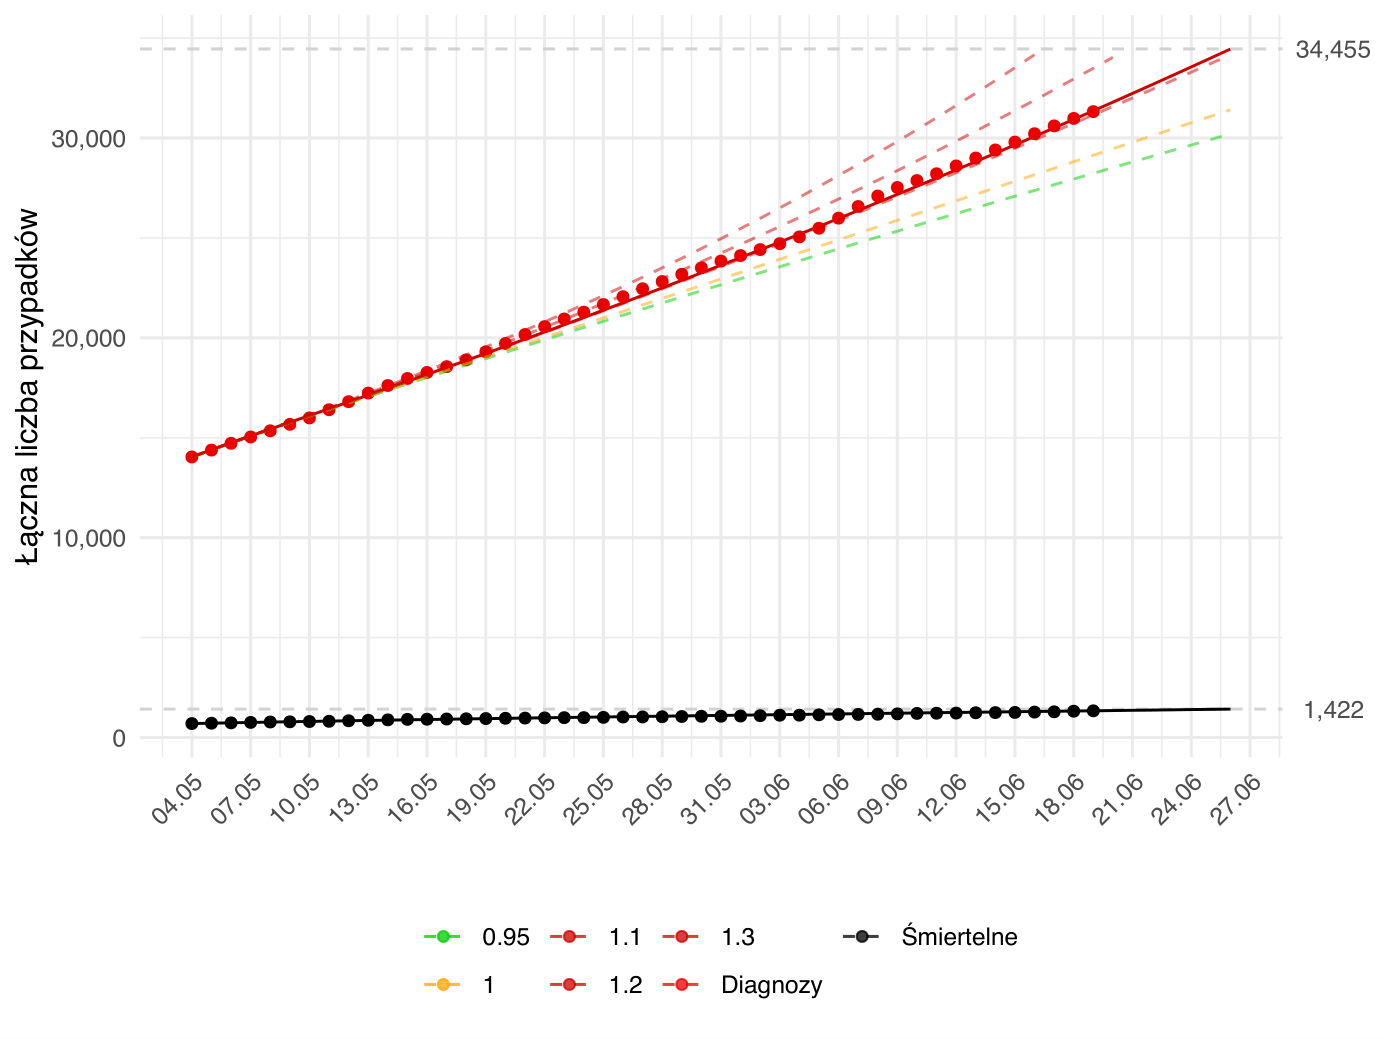 Prognoza krótkoterminowa liczby osób diagnozowanych i zgonów. Aktualna prognoza (linia ciągła) oparta na modelu dopasowanym zarówno względem parametru  β - związanego z redukcją kontaktów społecznych, jak i γ<sup>-1</sup> - związanego z efektywnością strategii testowania. Kolorem czerwonym oznaczona jest łączna liczba rozpoznań aż do danego dnia, zielonym - łączna liczba wyzdrowień, a czarnym - zgonów. Kropki oznaczają obserwowane dane odpowiedniej kategorii. Dodatkowo, przerywane linie przedstawiają alternatywne prognozy zależne od poziomu parametru <i>R<sub>0</sub></i>, przy parametrze γ<sup>-1</sup> (interpretowanym jako długość okresu zakaźności) ustalonym na wartość estymowaną w oparciu o dane do dnia przygotowania raportu. Kolor przerywanych linii odpowiada intensywności epidemii zgodnej z wartością parametru <i>R<sub>0</sub></i> (zielona - podkrytyczna, żółta - stan endemiczny, czerwona - nadkrytyczna). Model został dopasowany do danych od 04.05.